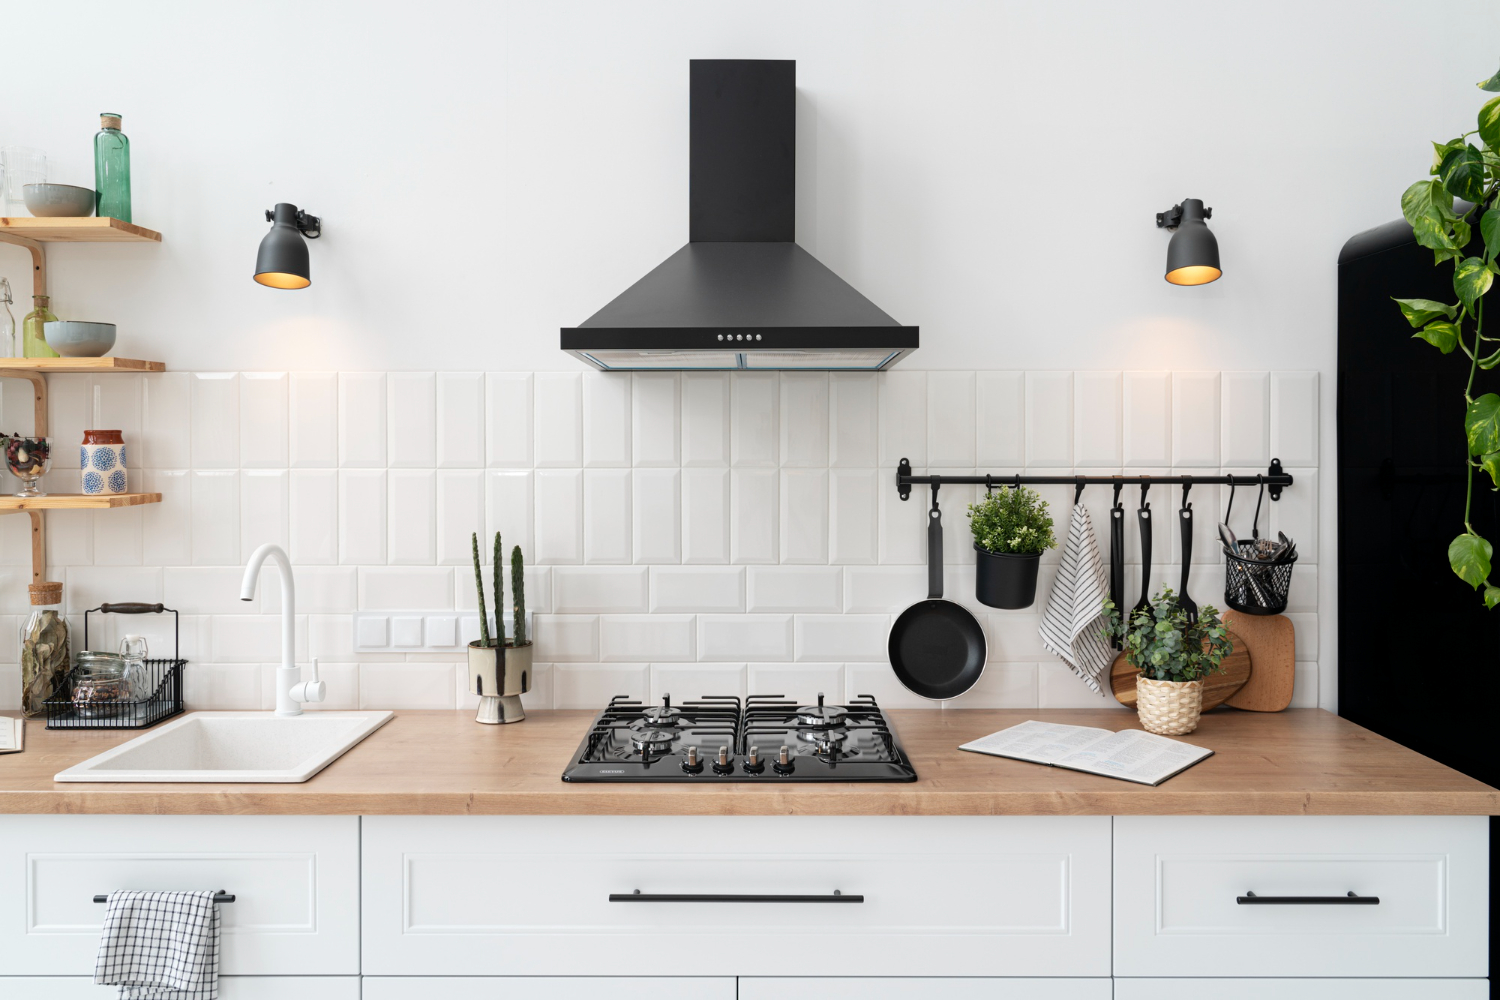 Confira tudo que você precisa saber sobre a instalação e a funcionalidade do exaustor para cozinha e transforme o ambiente!